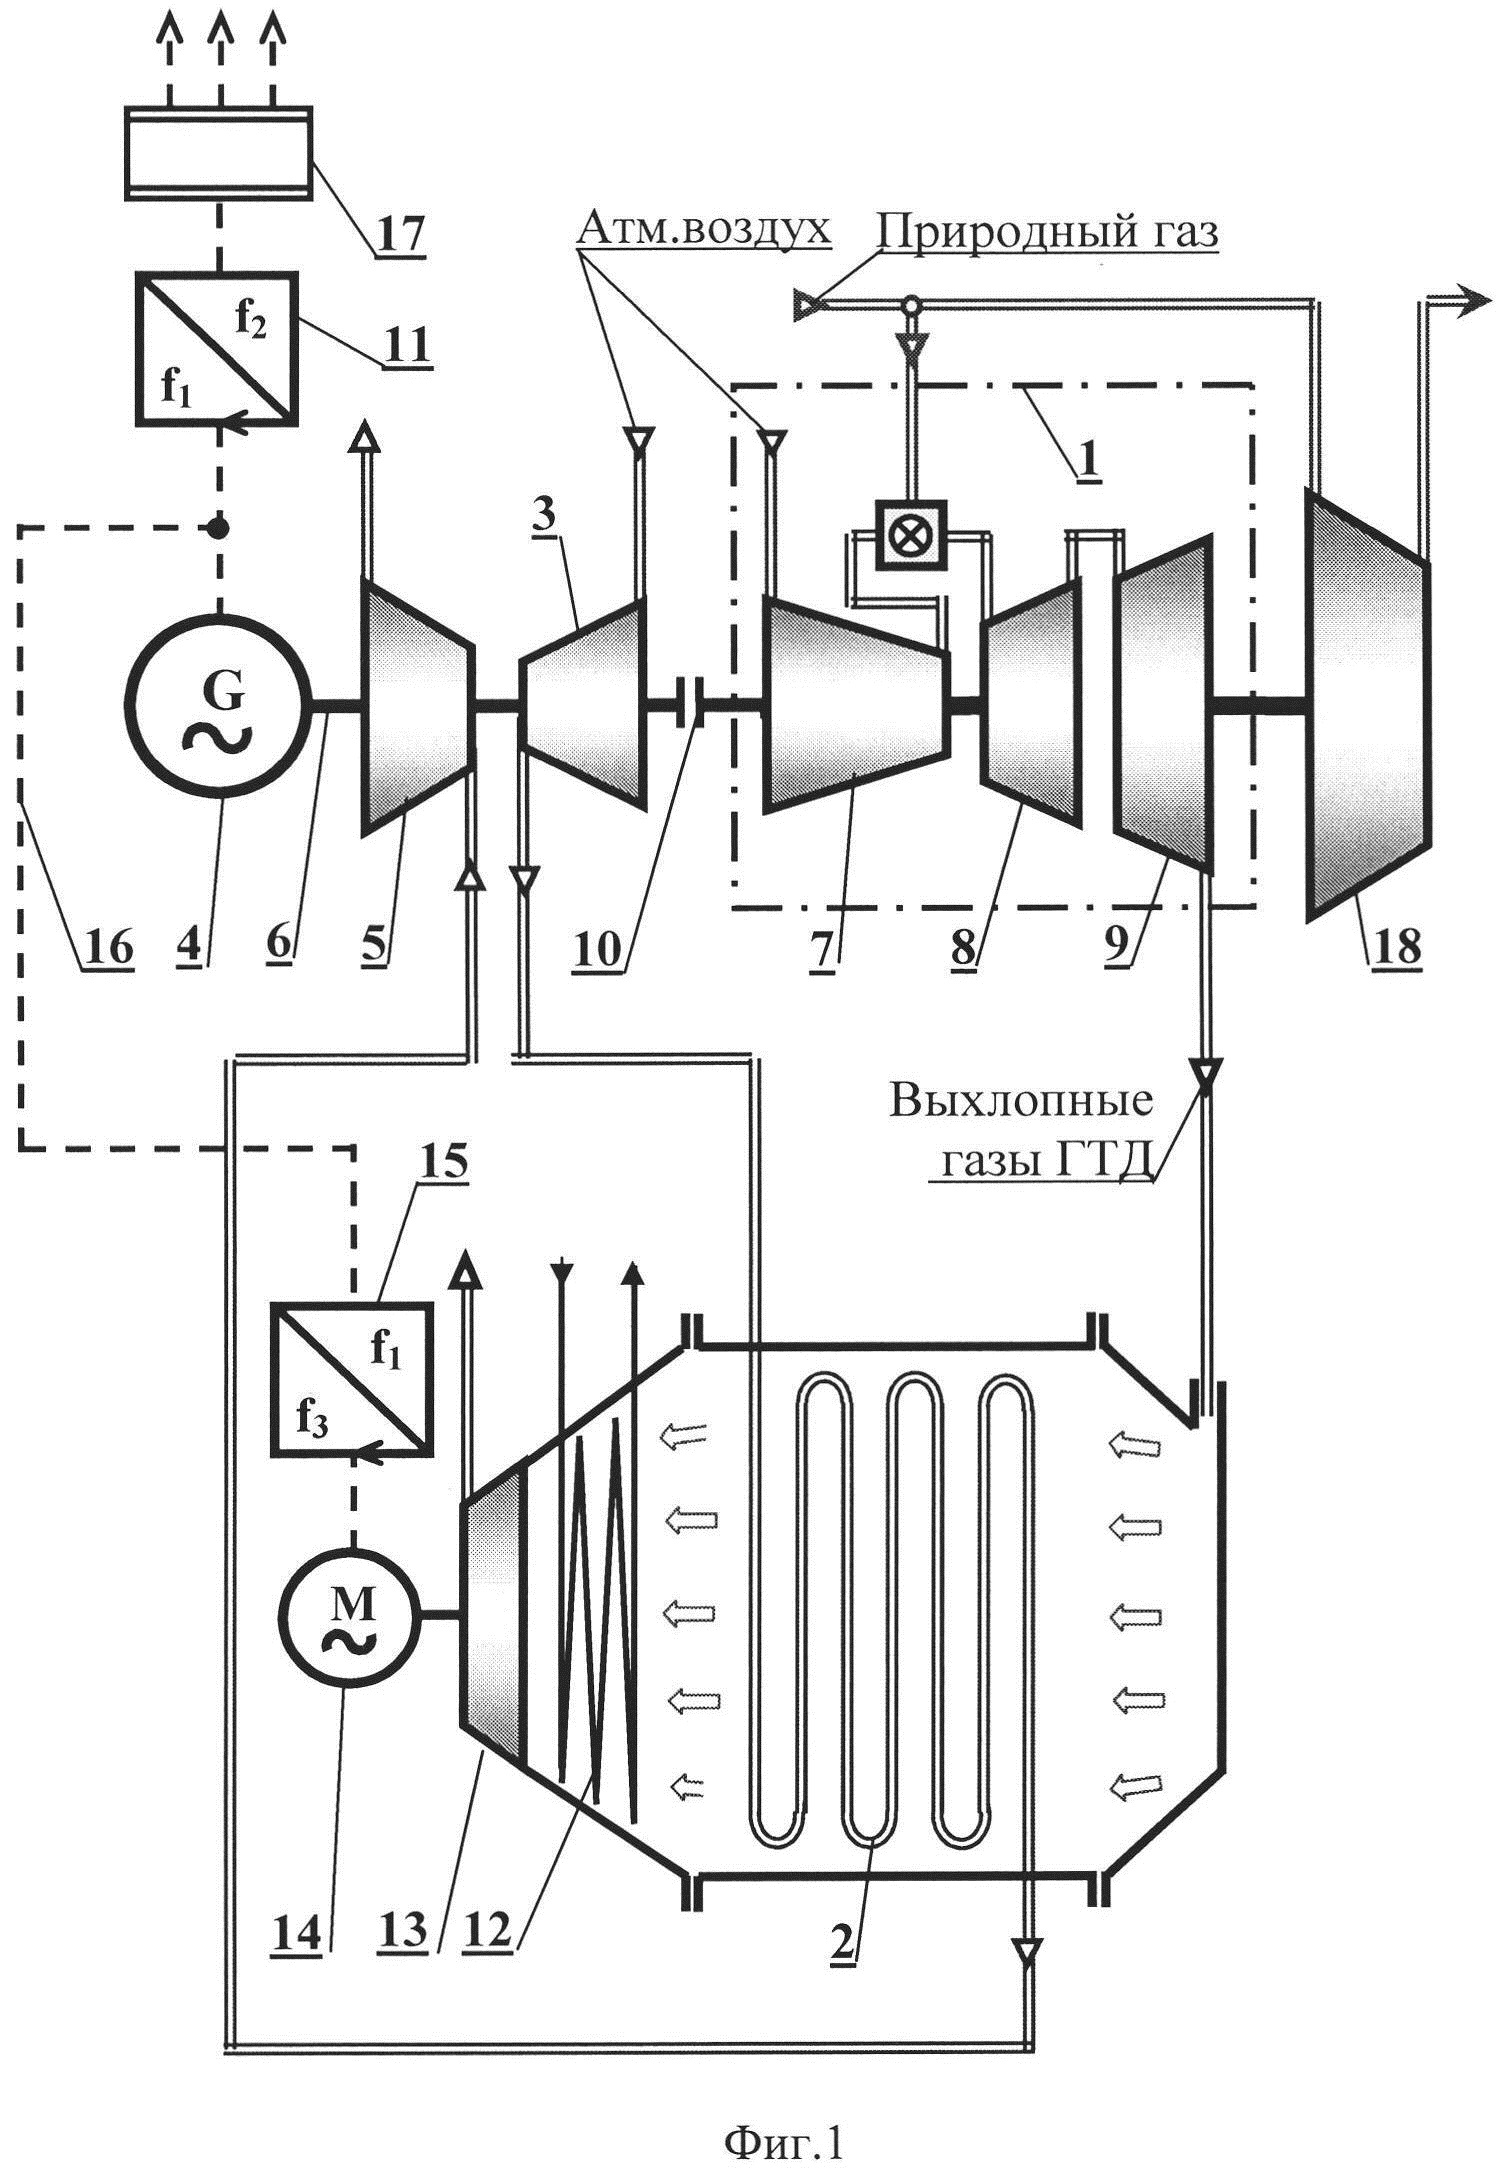 Функциональная схема газоперекачивающего агрегата